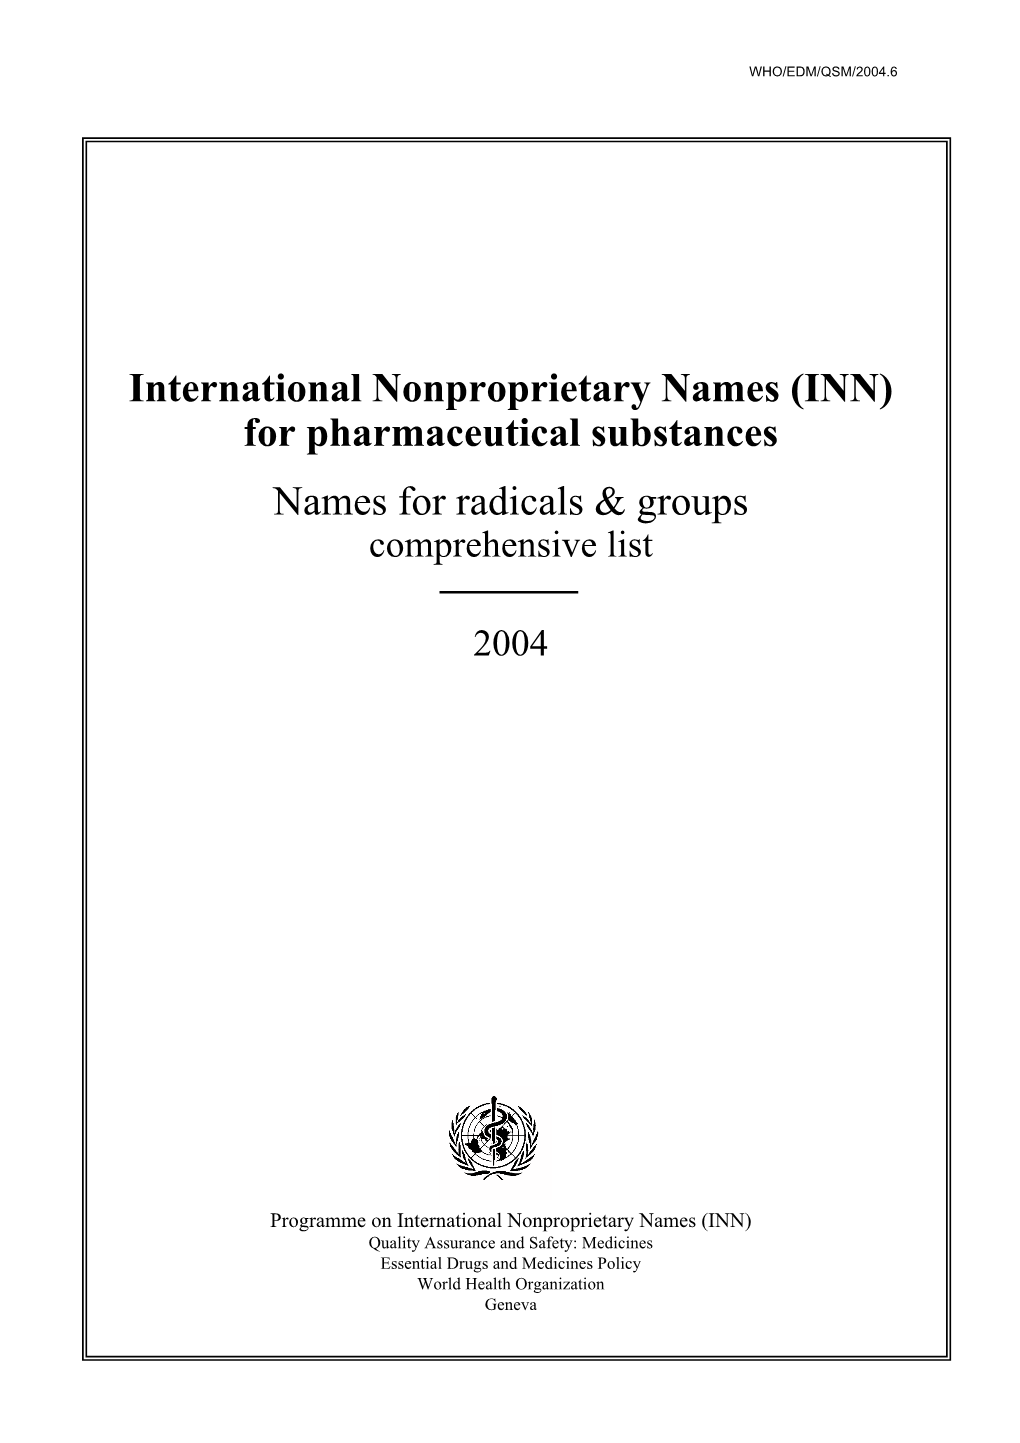 (INN) for Pharmaceutical Substances Names for Radicals & Groups